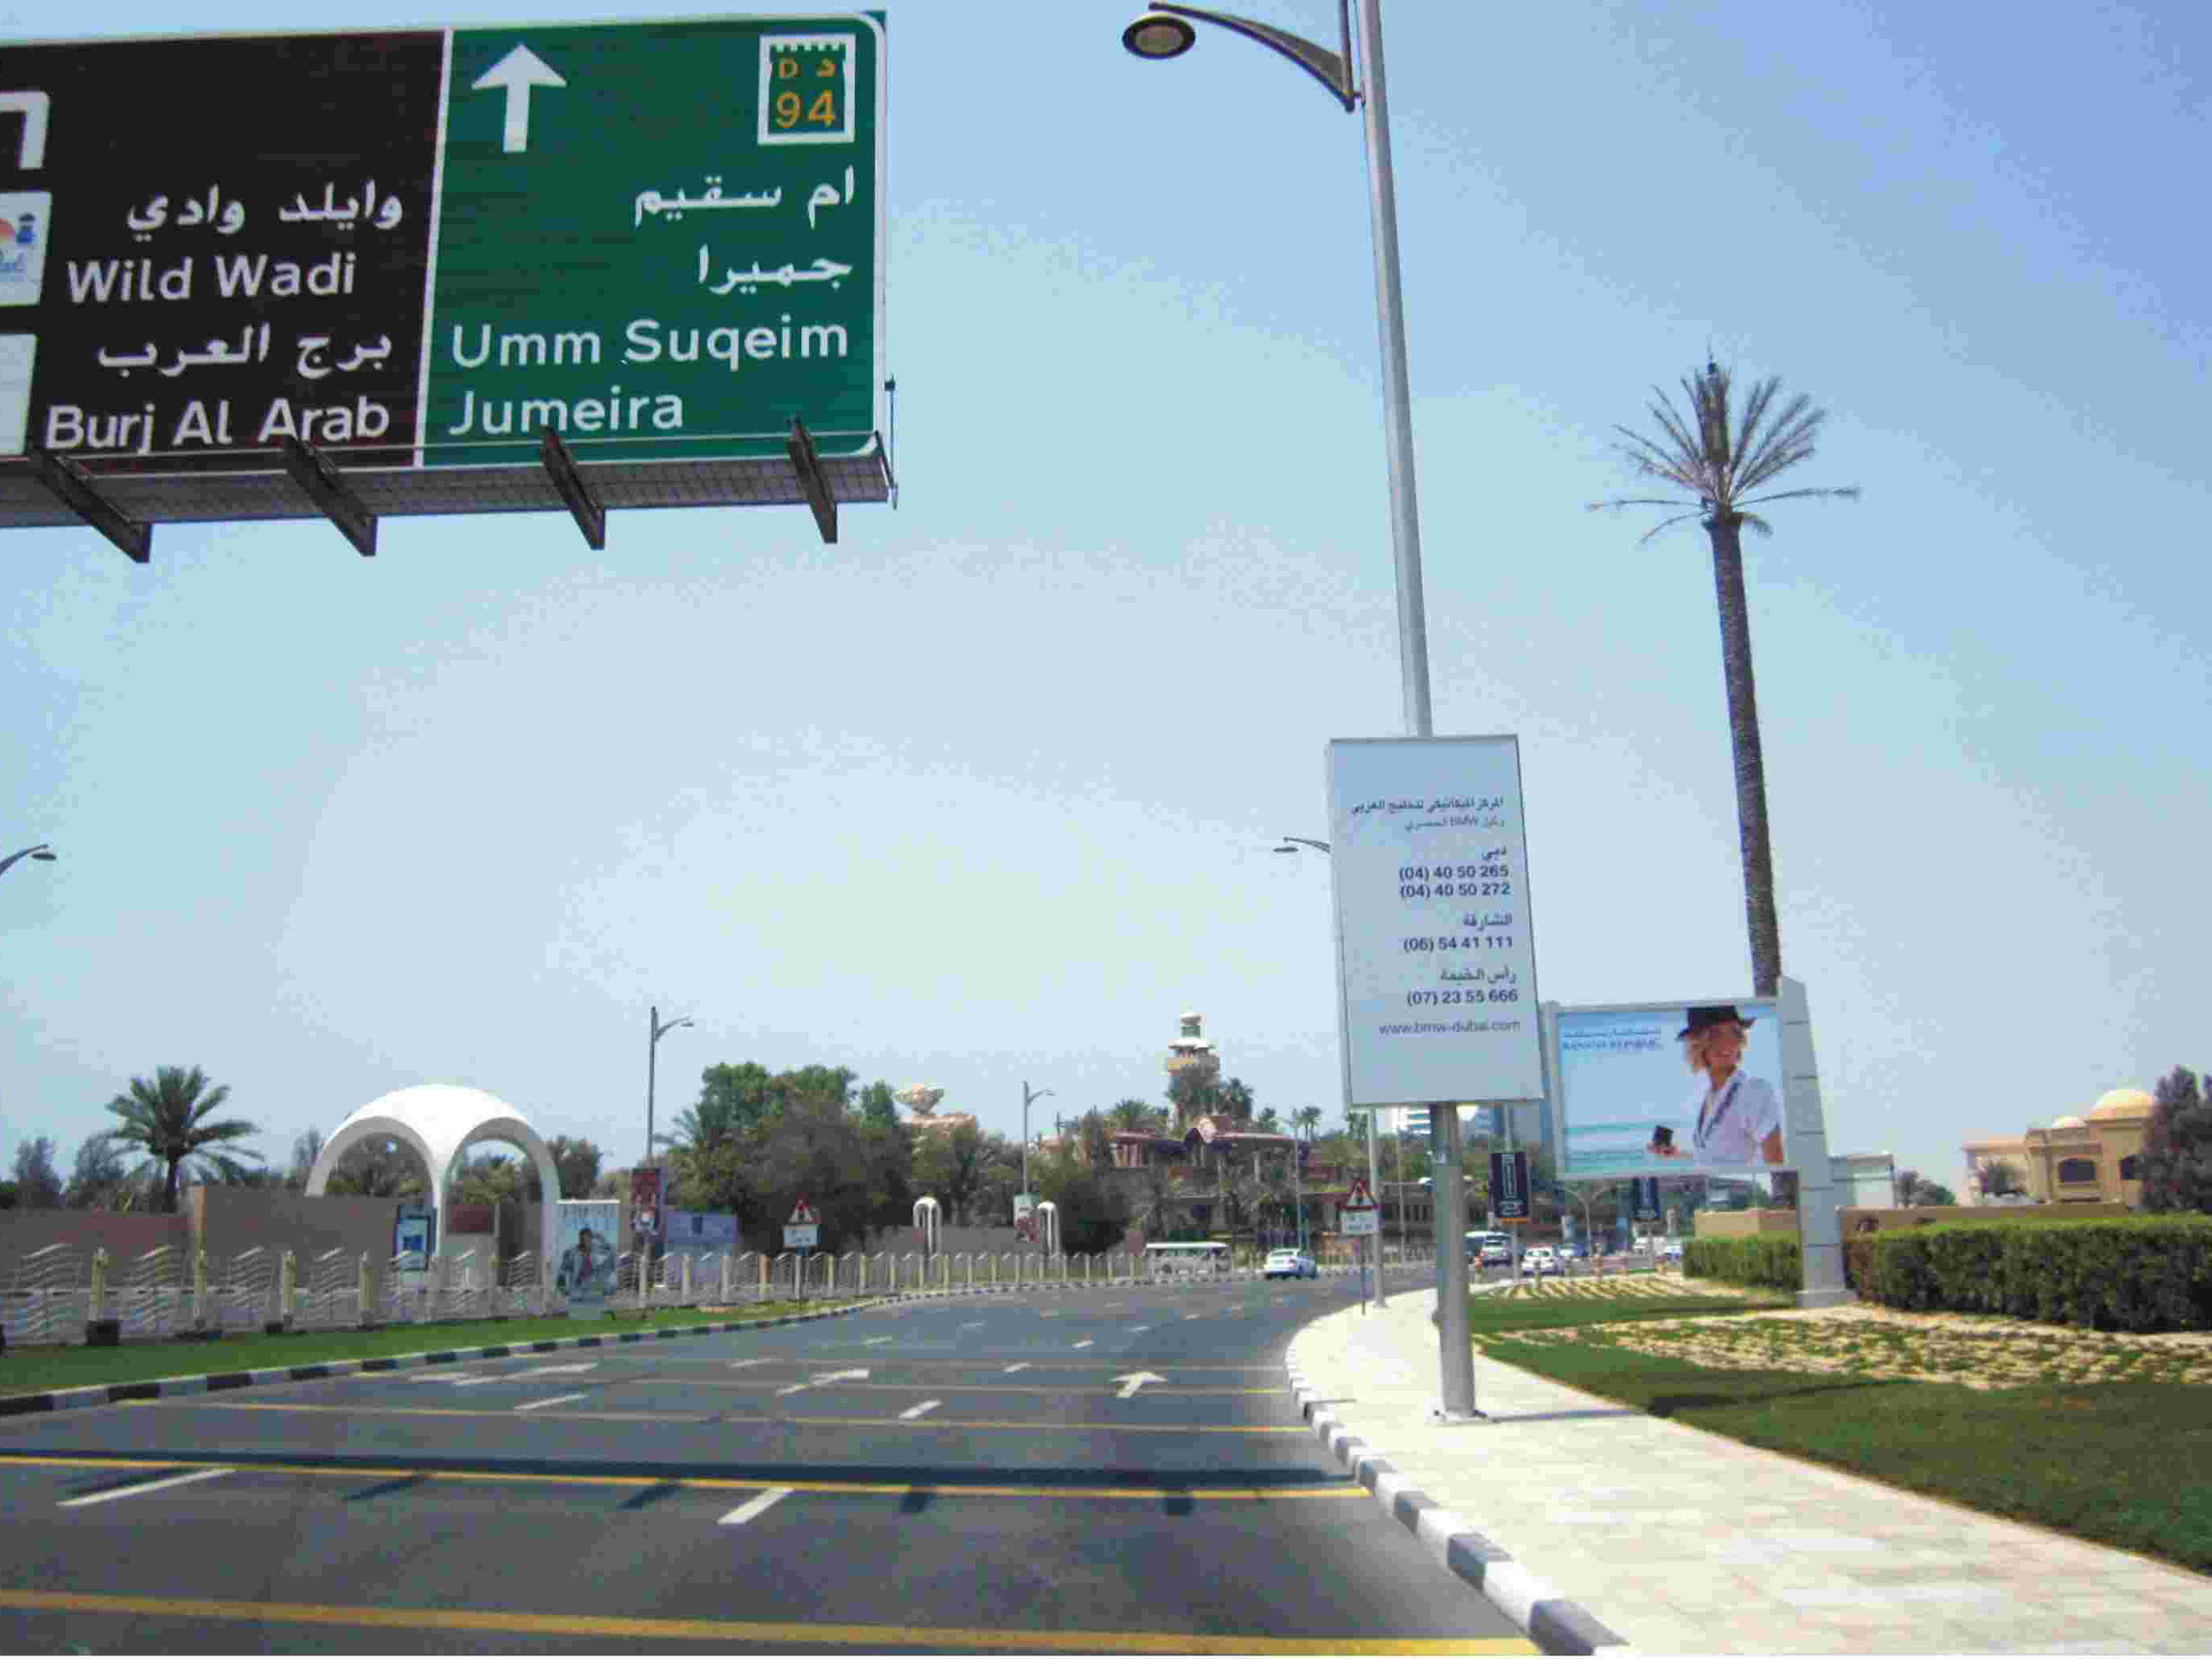 迪拜市政道路工程